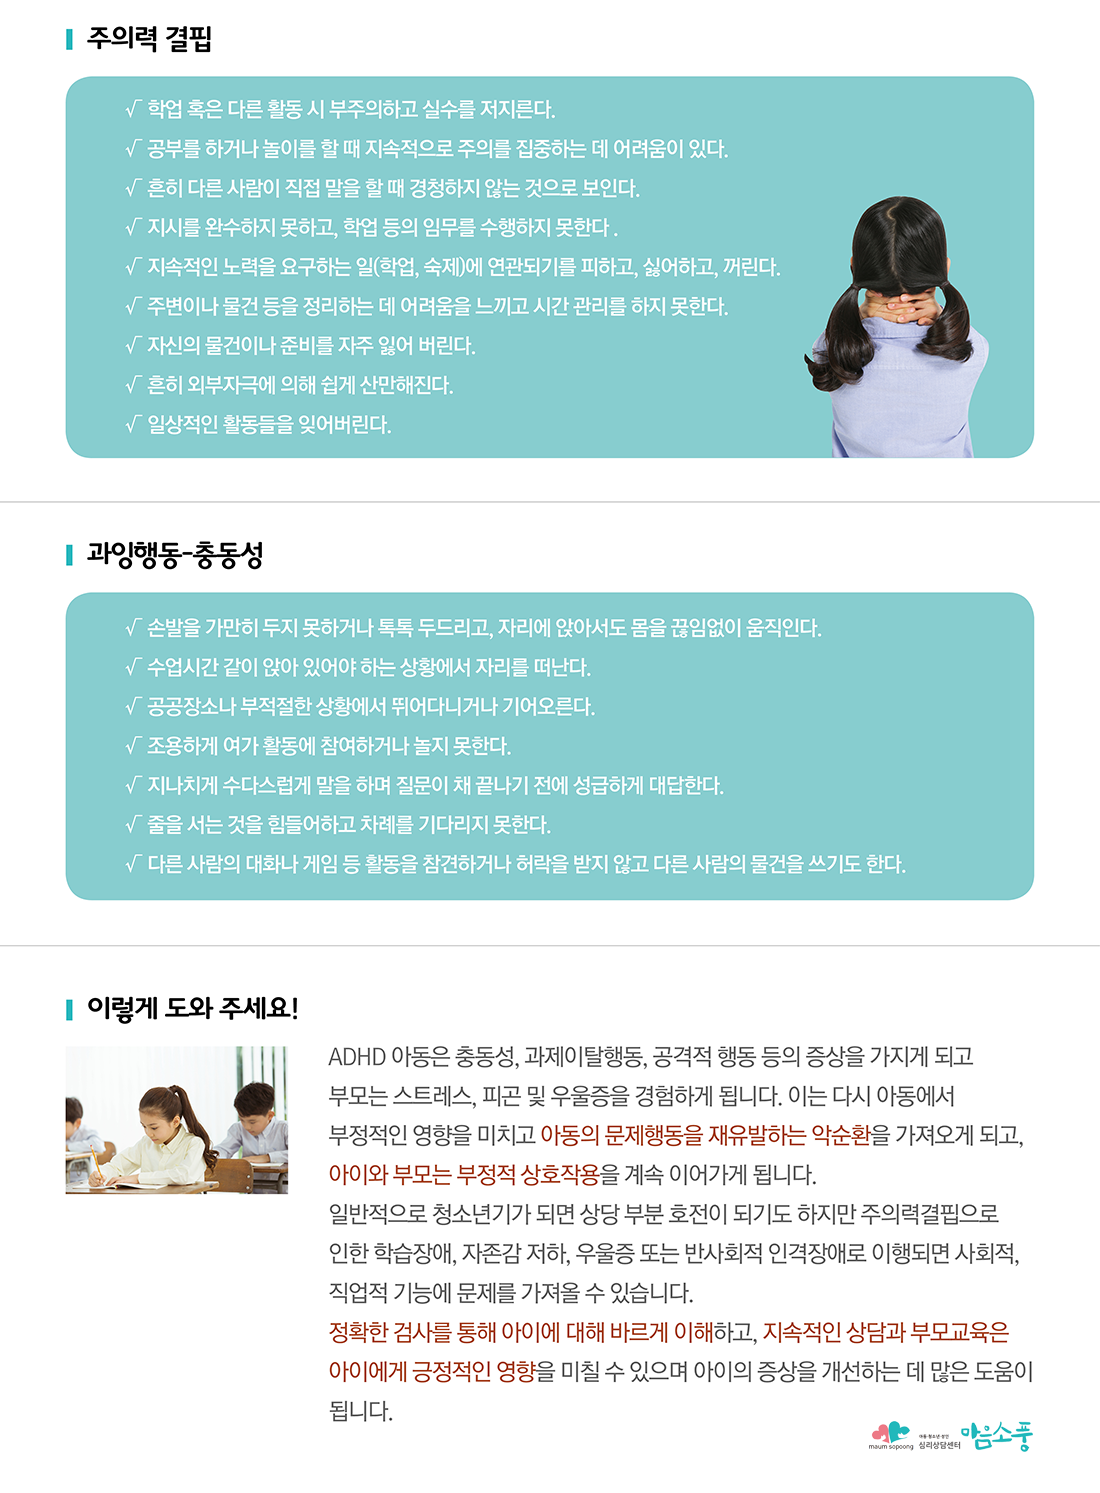 ADHD-아동청소년상담-인천,부평심리상담센터 마음소풍